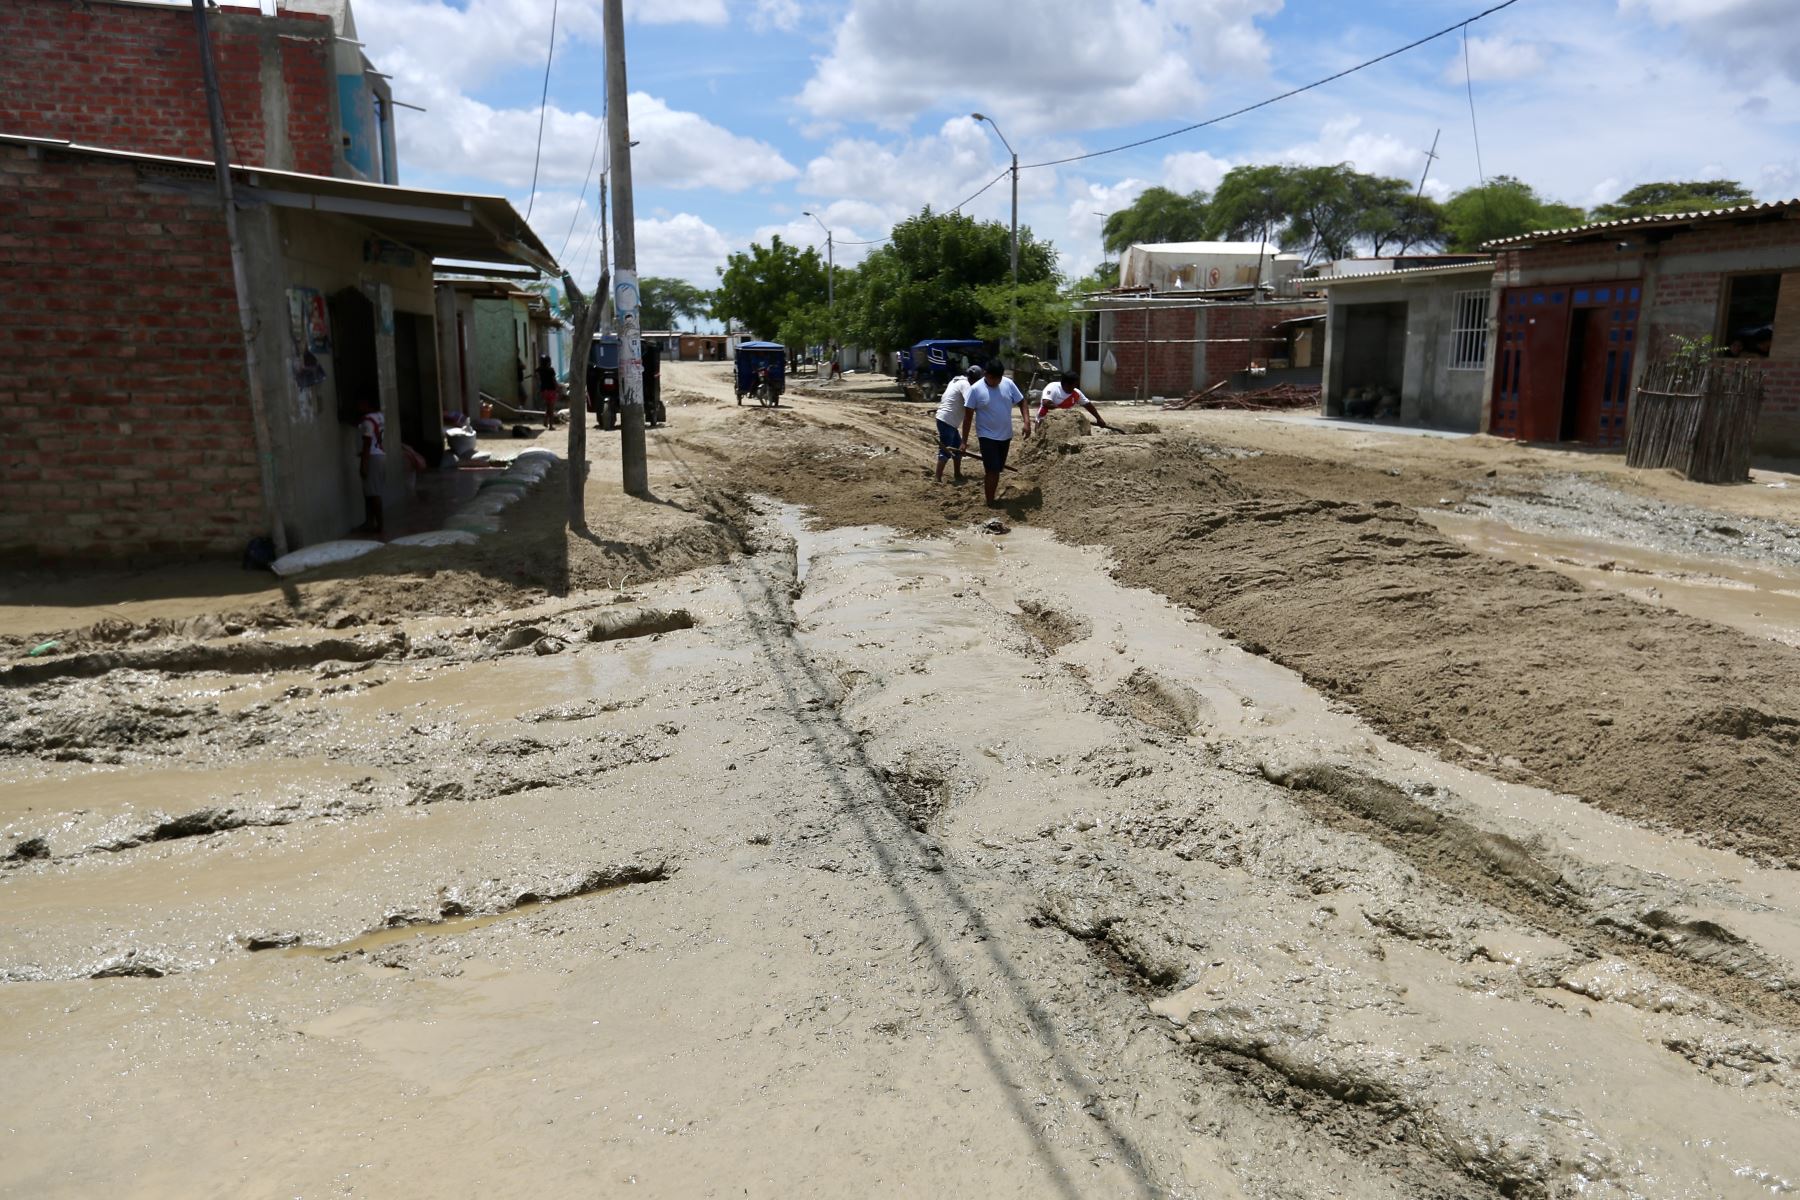 El Centro Poblado Pedregal Chico de Piura que fue afectado por el niño costero en el 2017 vuelve a ser víctima de las lluvias por el ciclón Yaku, dejando viviendas y calles llenas de lodo y con agua estancada.

Foto: ANDINA/Ricardo Cuba